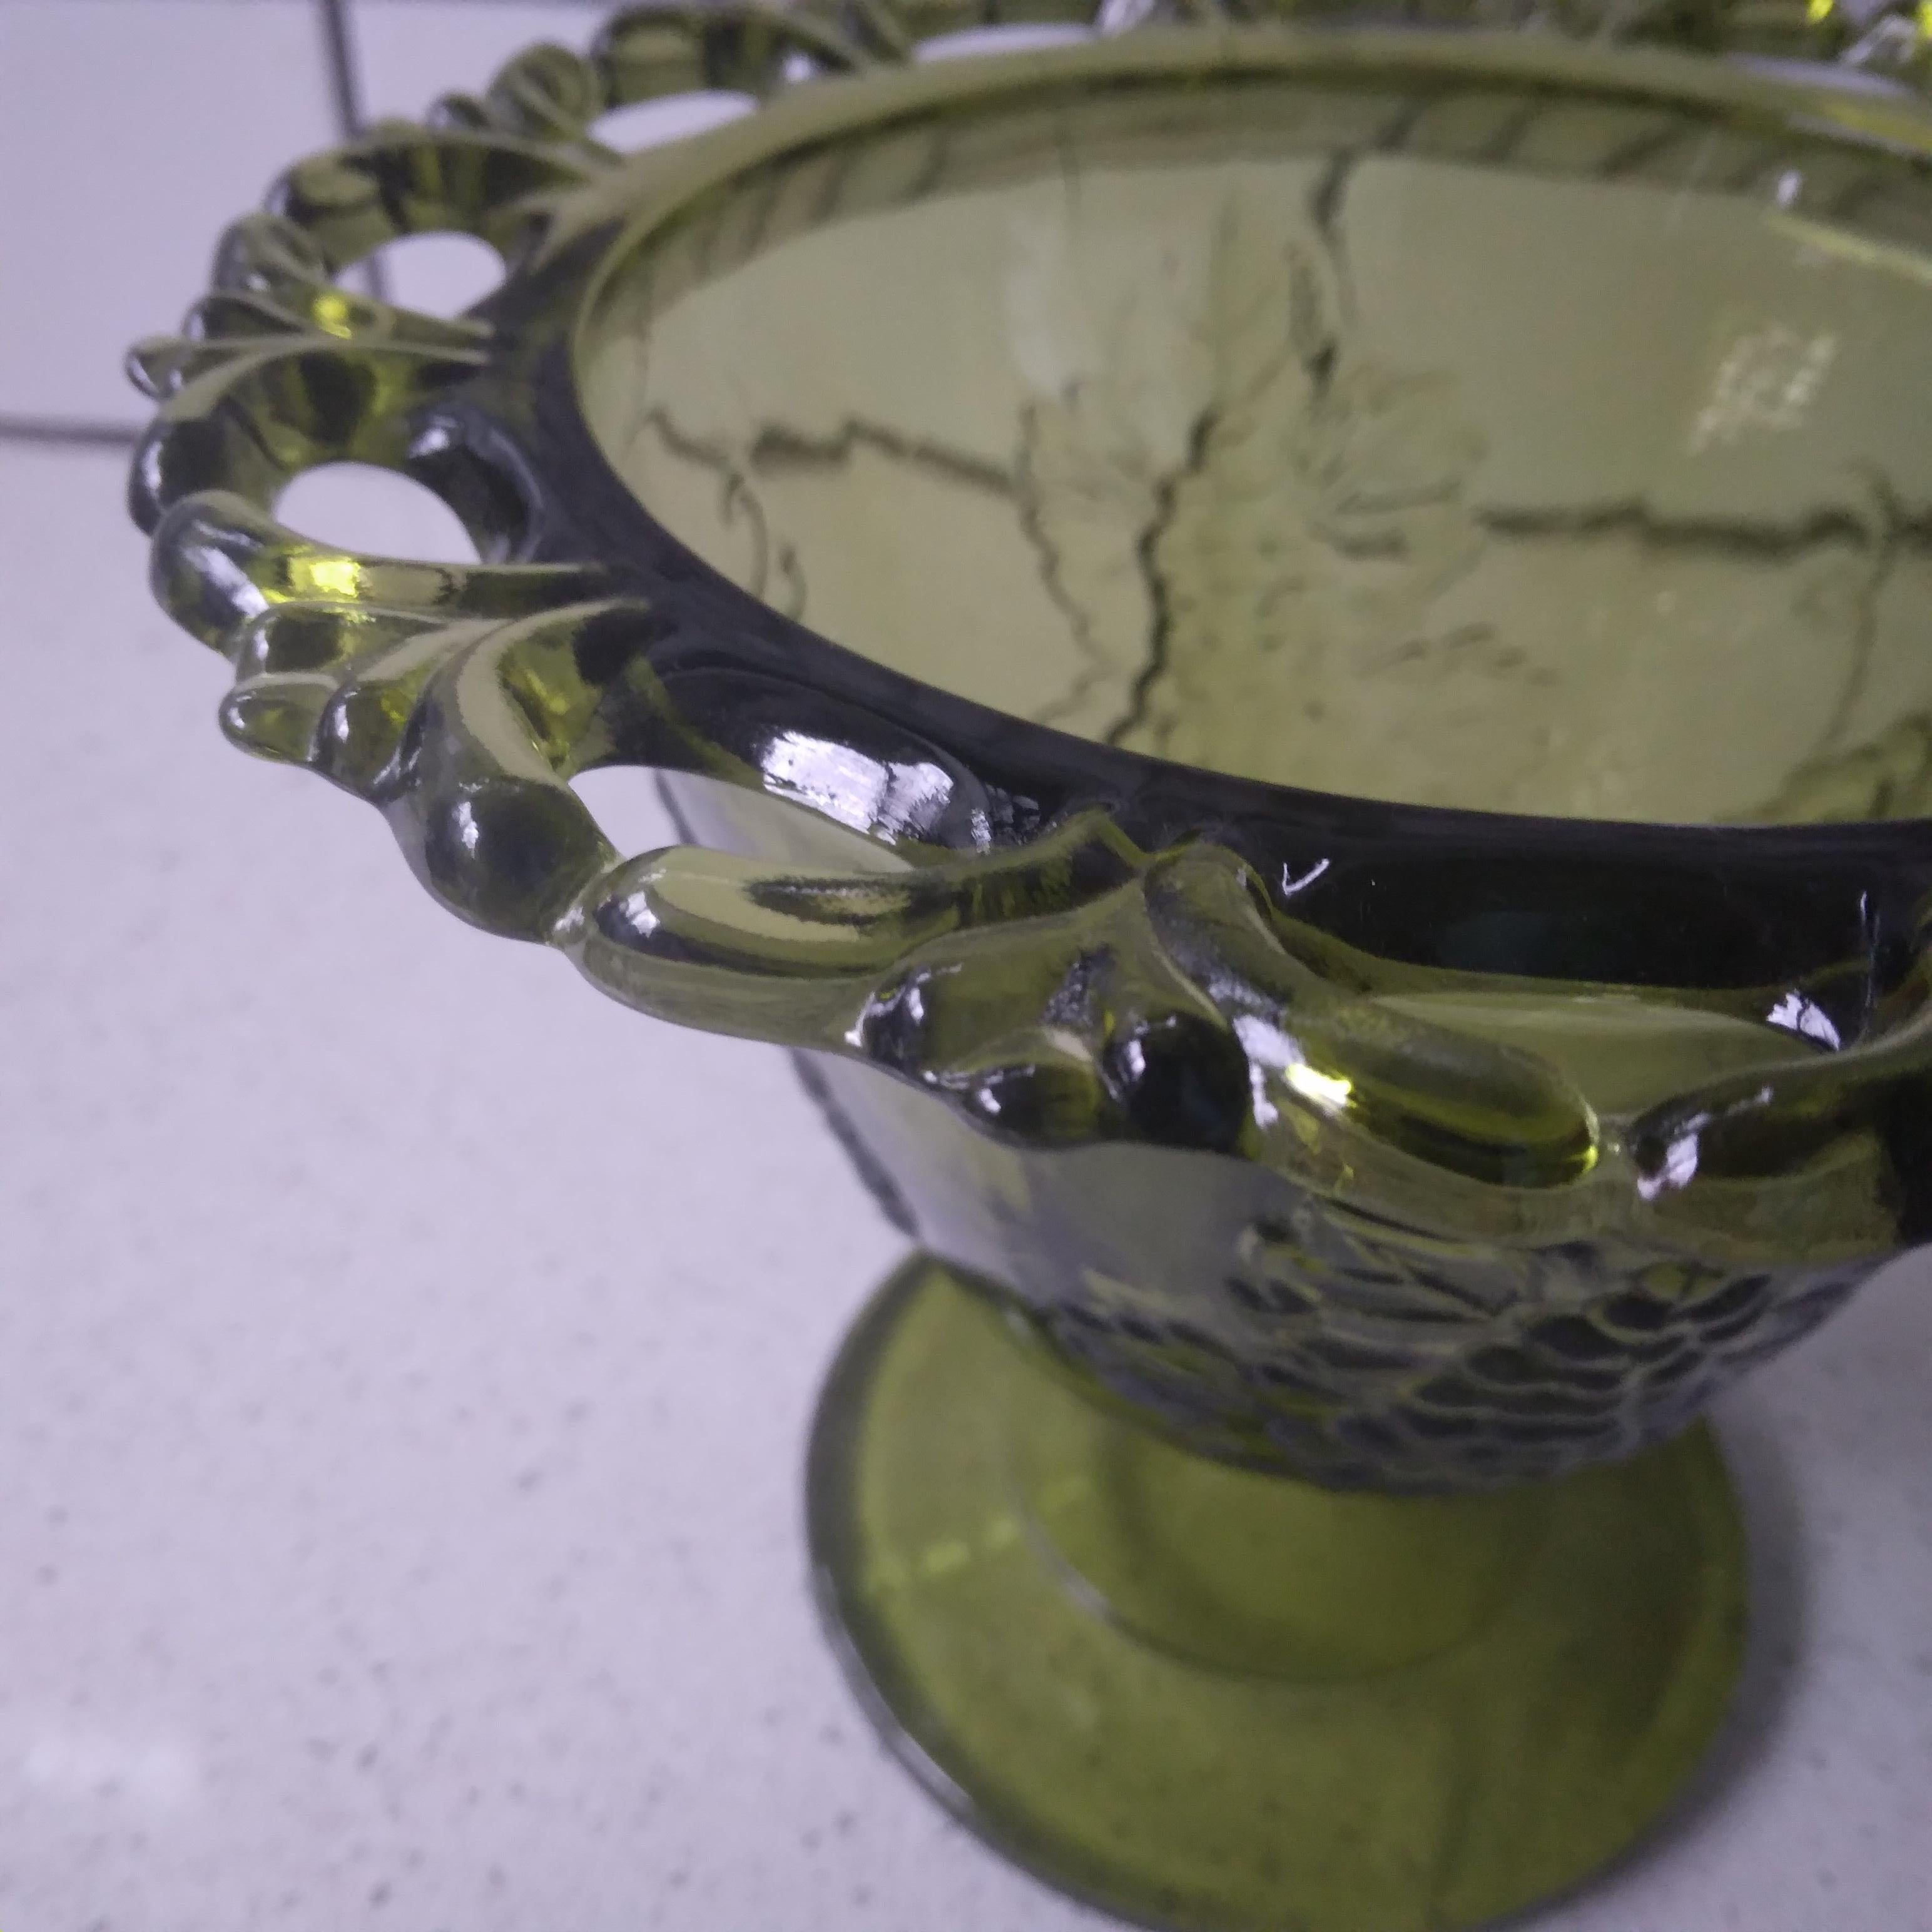 Robuste et magnifique, on adore les tons vert avocat de ce bol vintage. 

Cette pièce en verre présente un magnifique motif de raisin de la récolte avec un bord supérieur ouvert en dentelle. Le piédestal est orné d'un motif de raisin délicieux pour